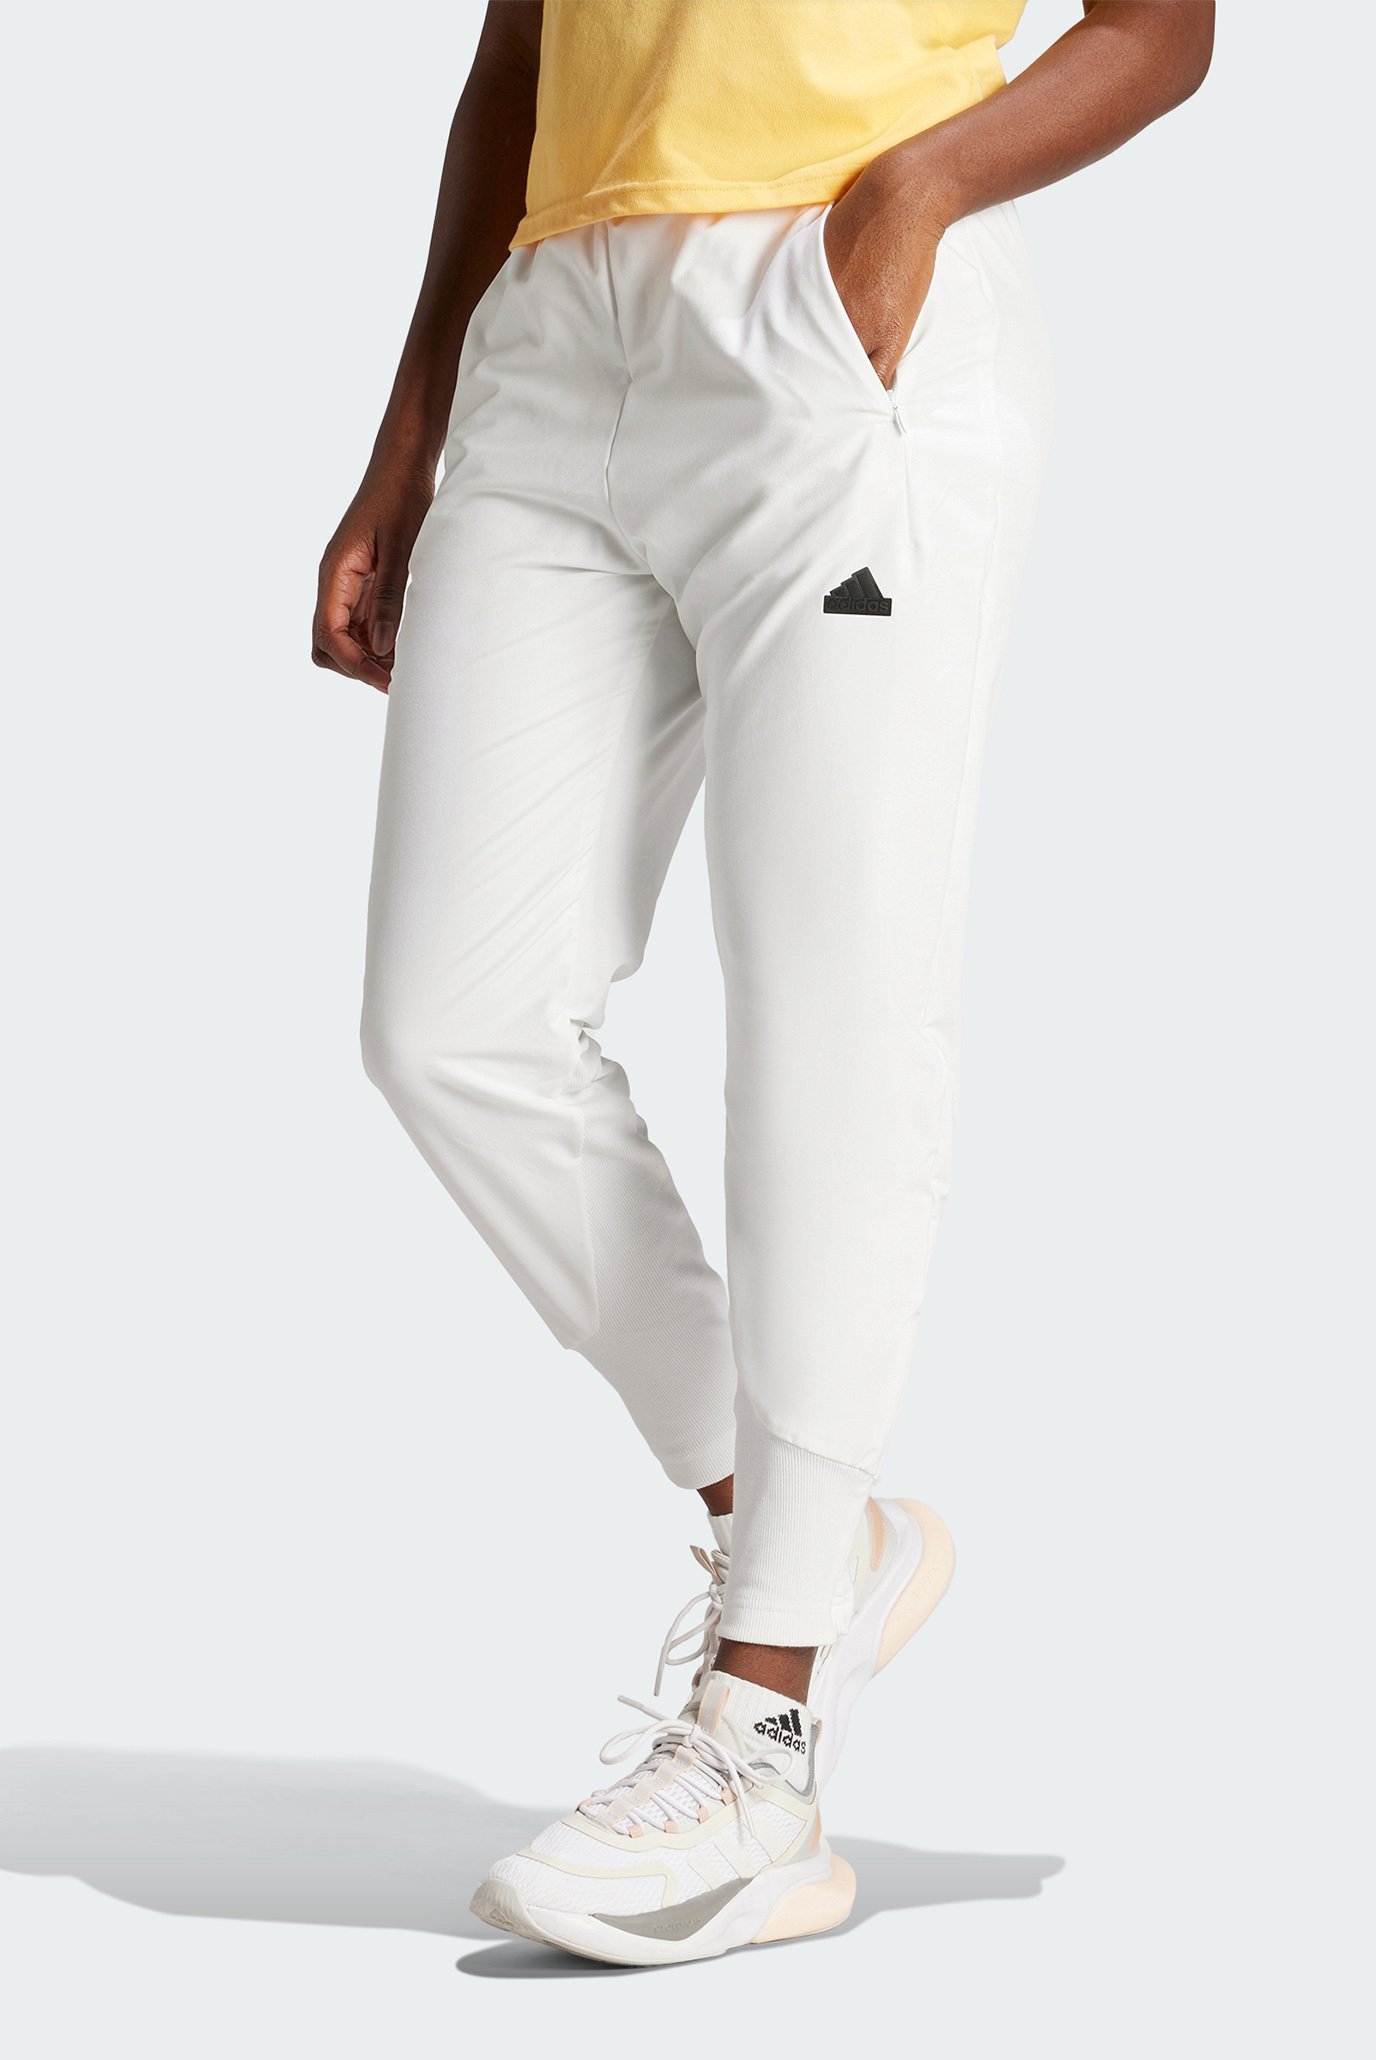 Жіночі білі спортивні штани Z.N.E. Woven 1